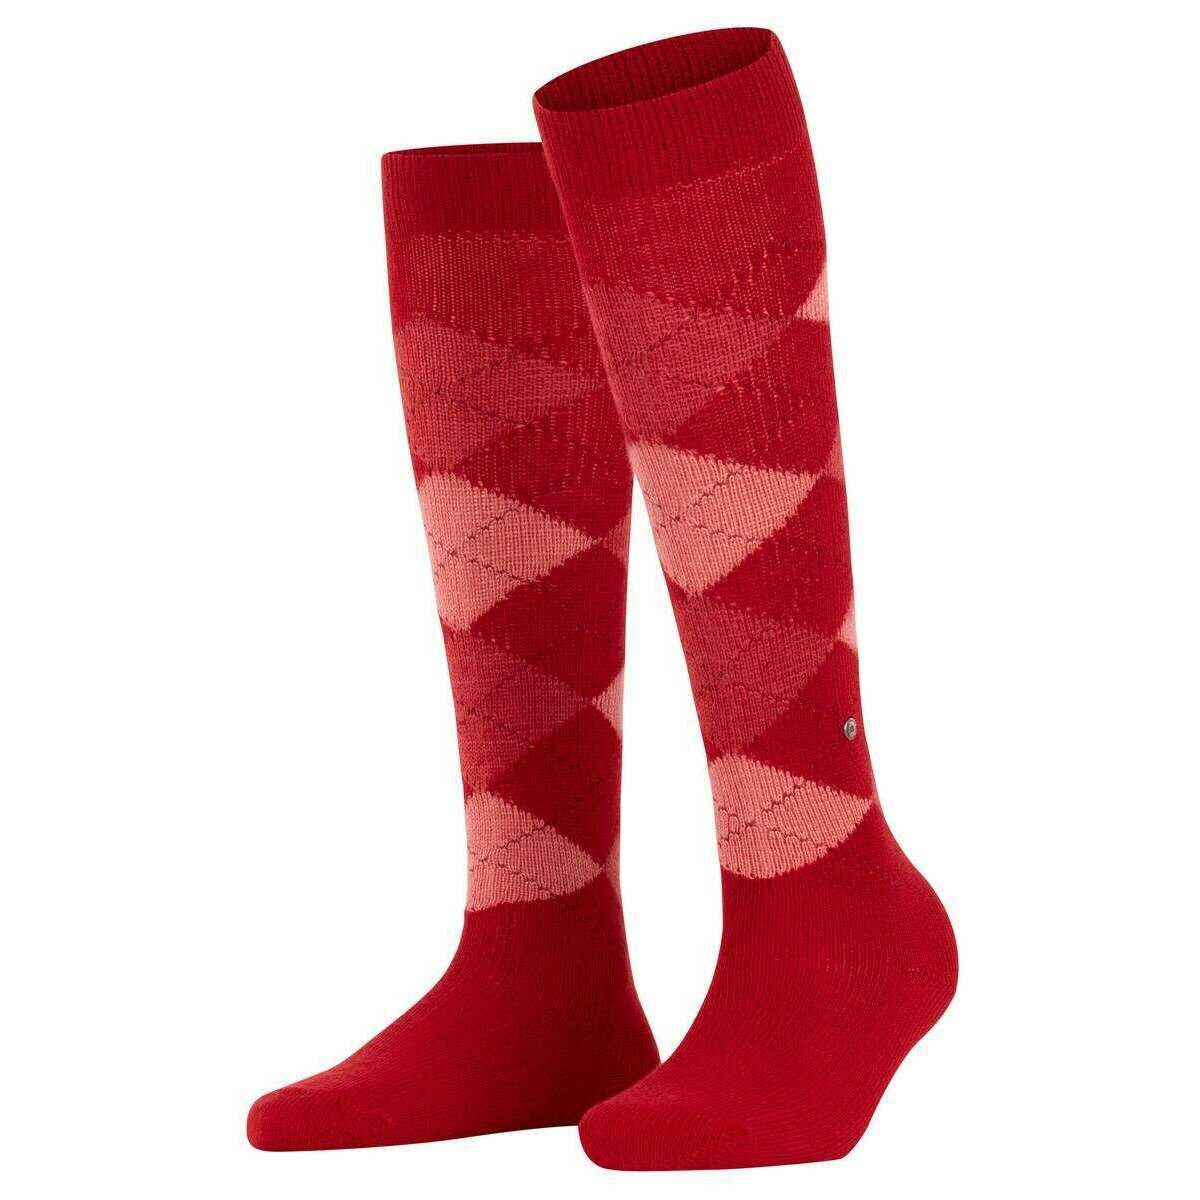 Burlington Whitby Knee High Socks - Vermillion Red